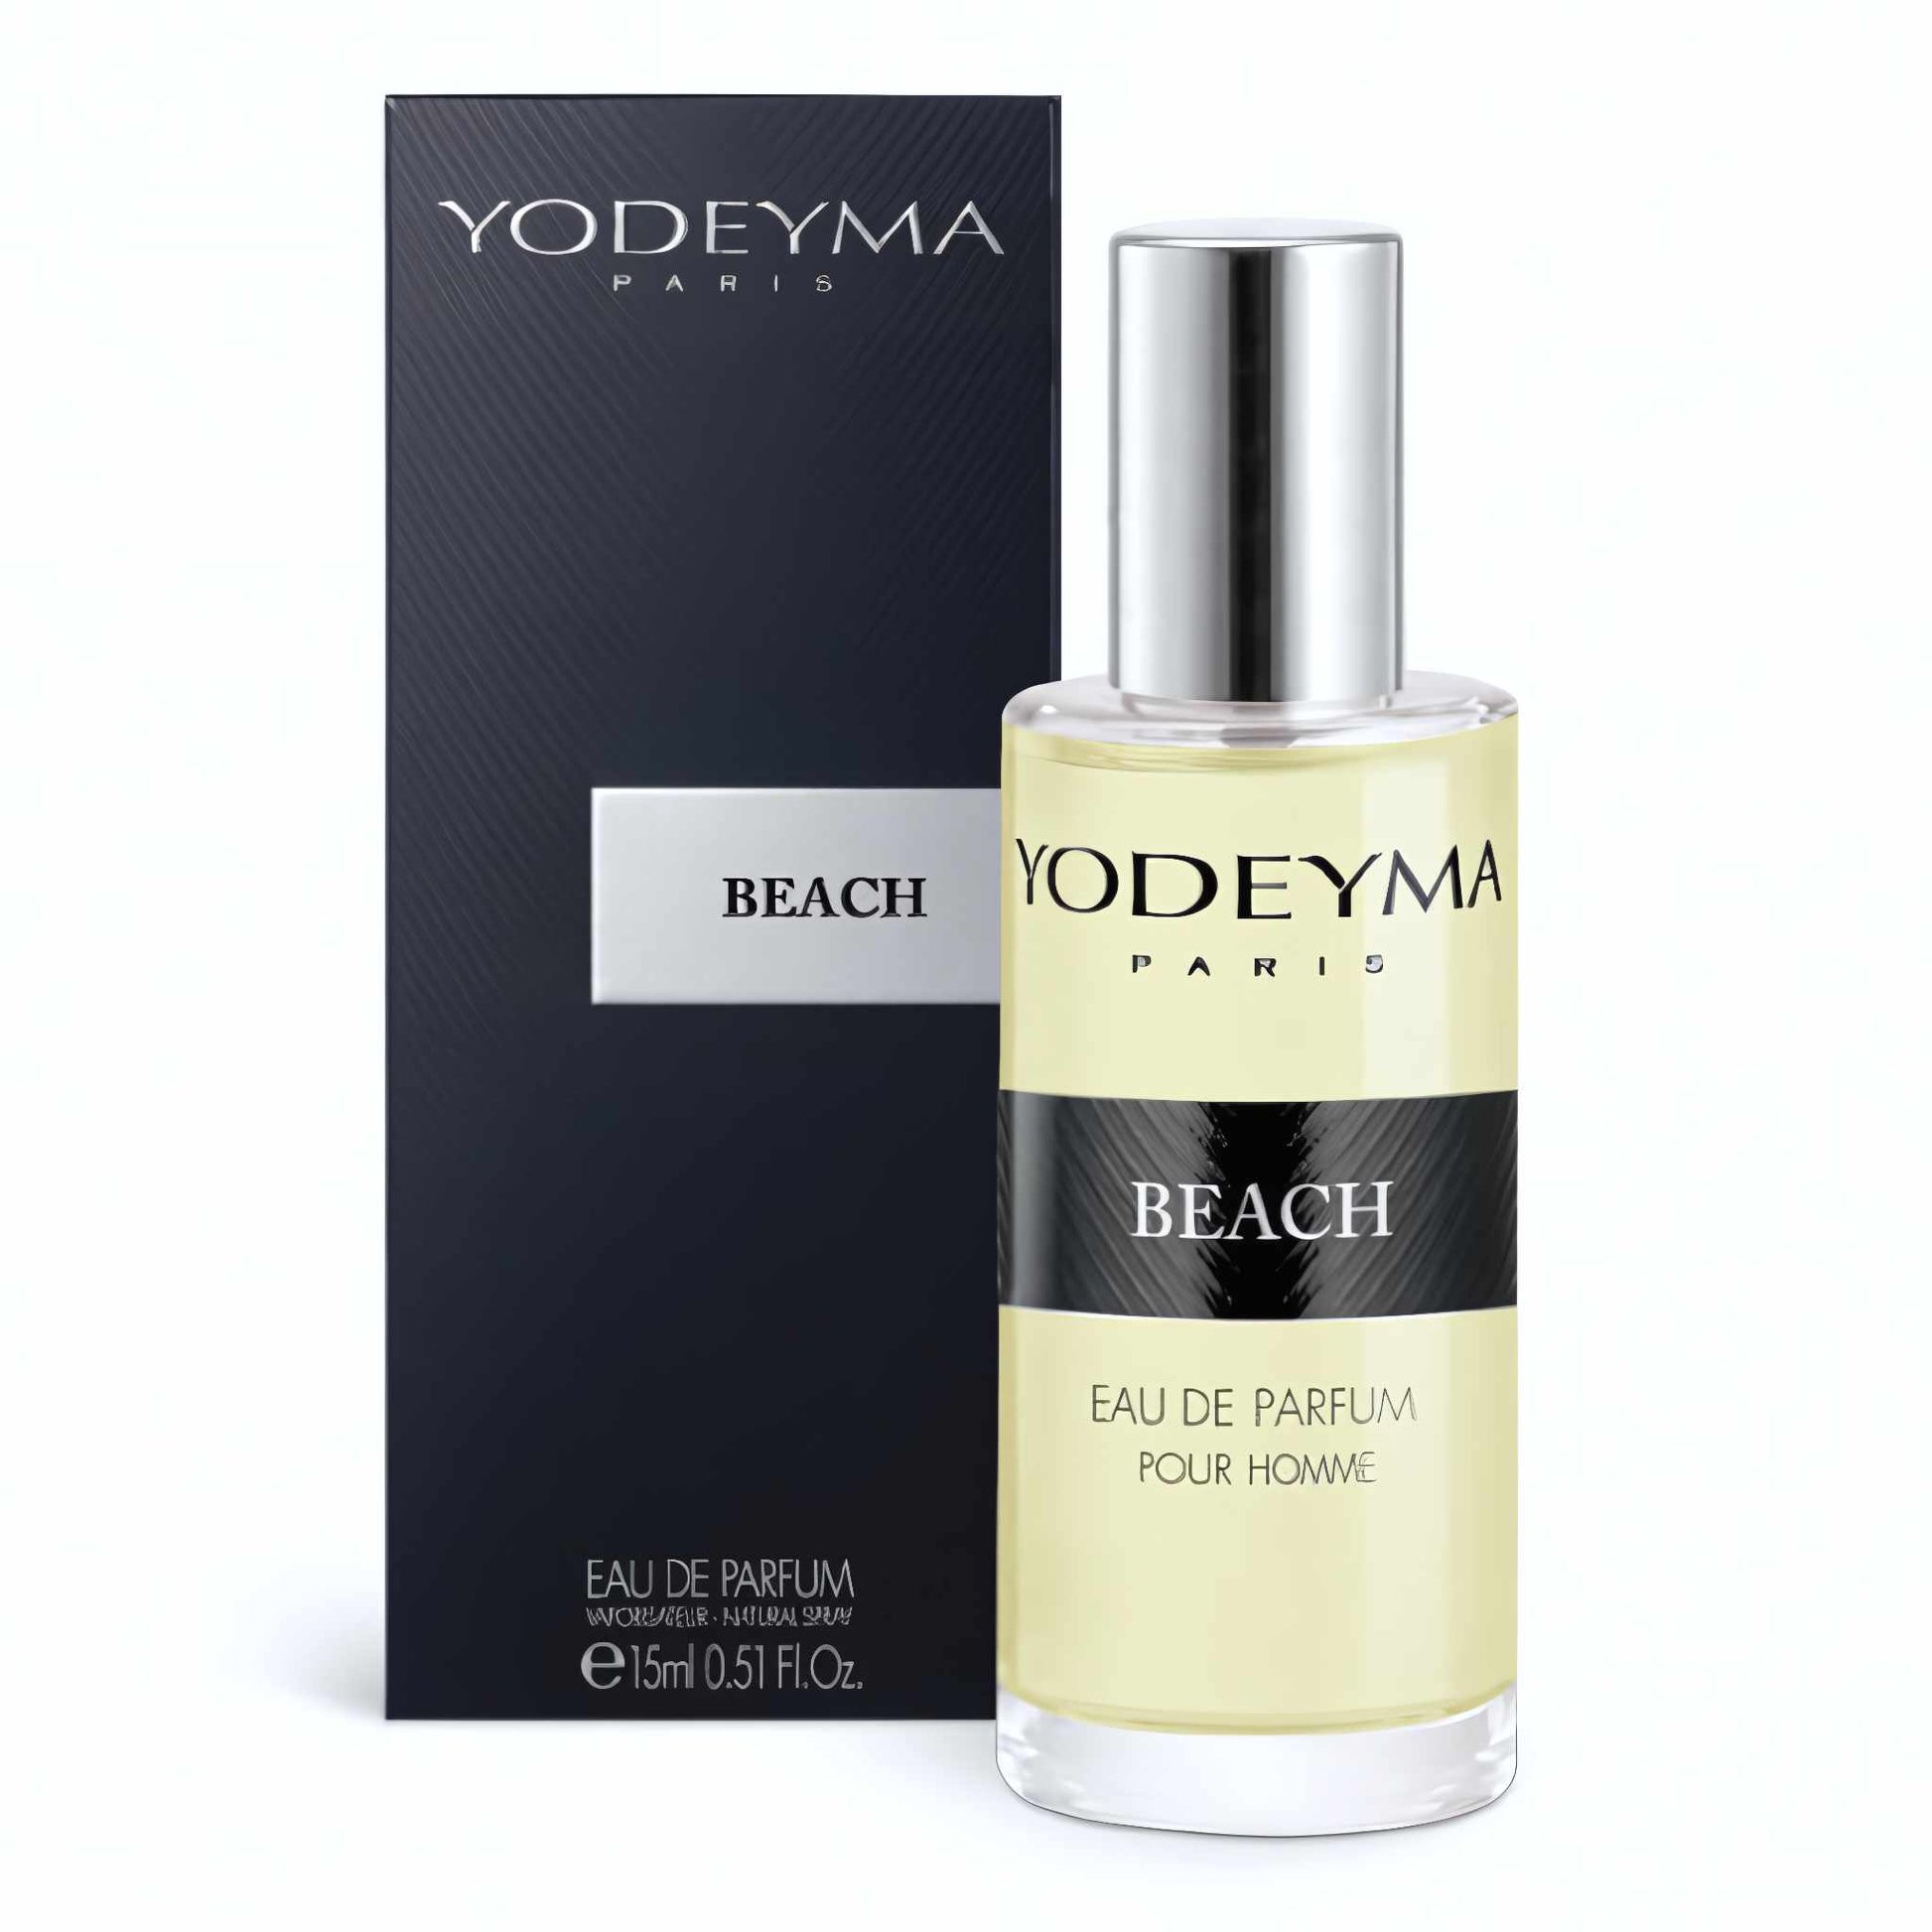 Yodeyma Beach Eau de Parfum 15 ml